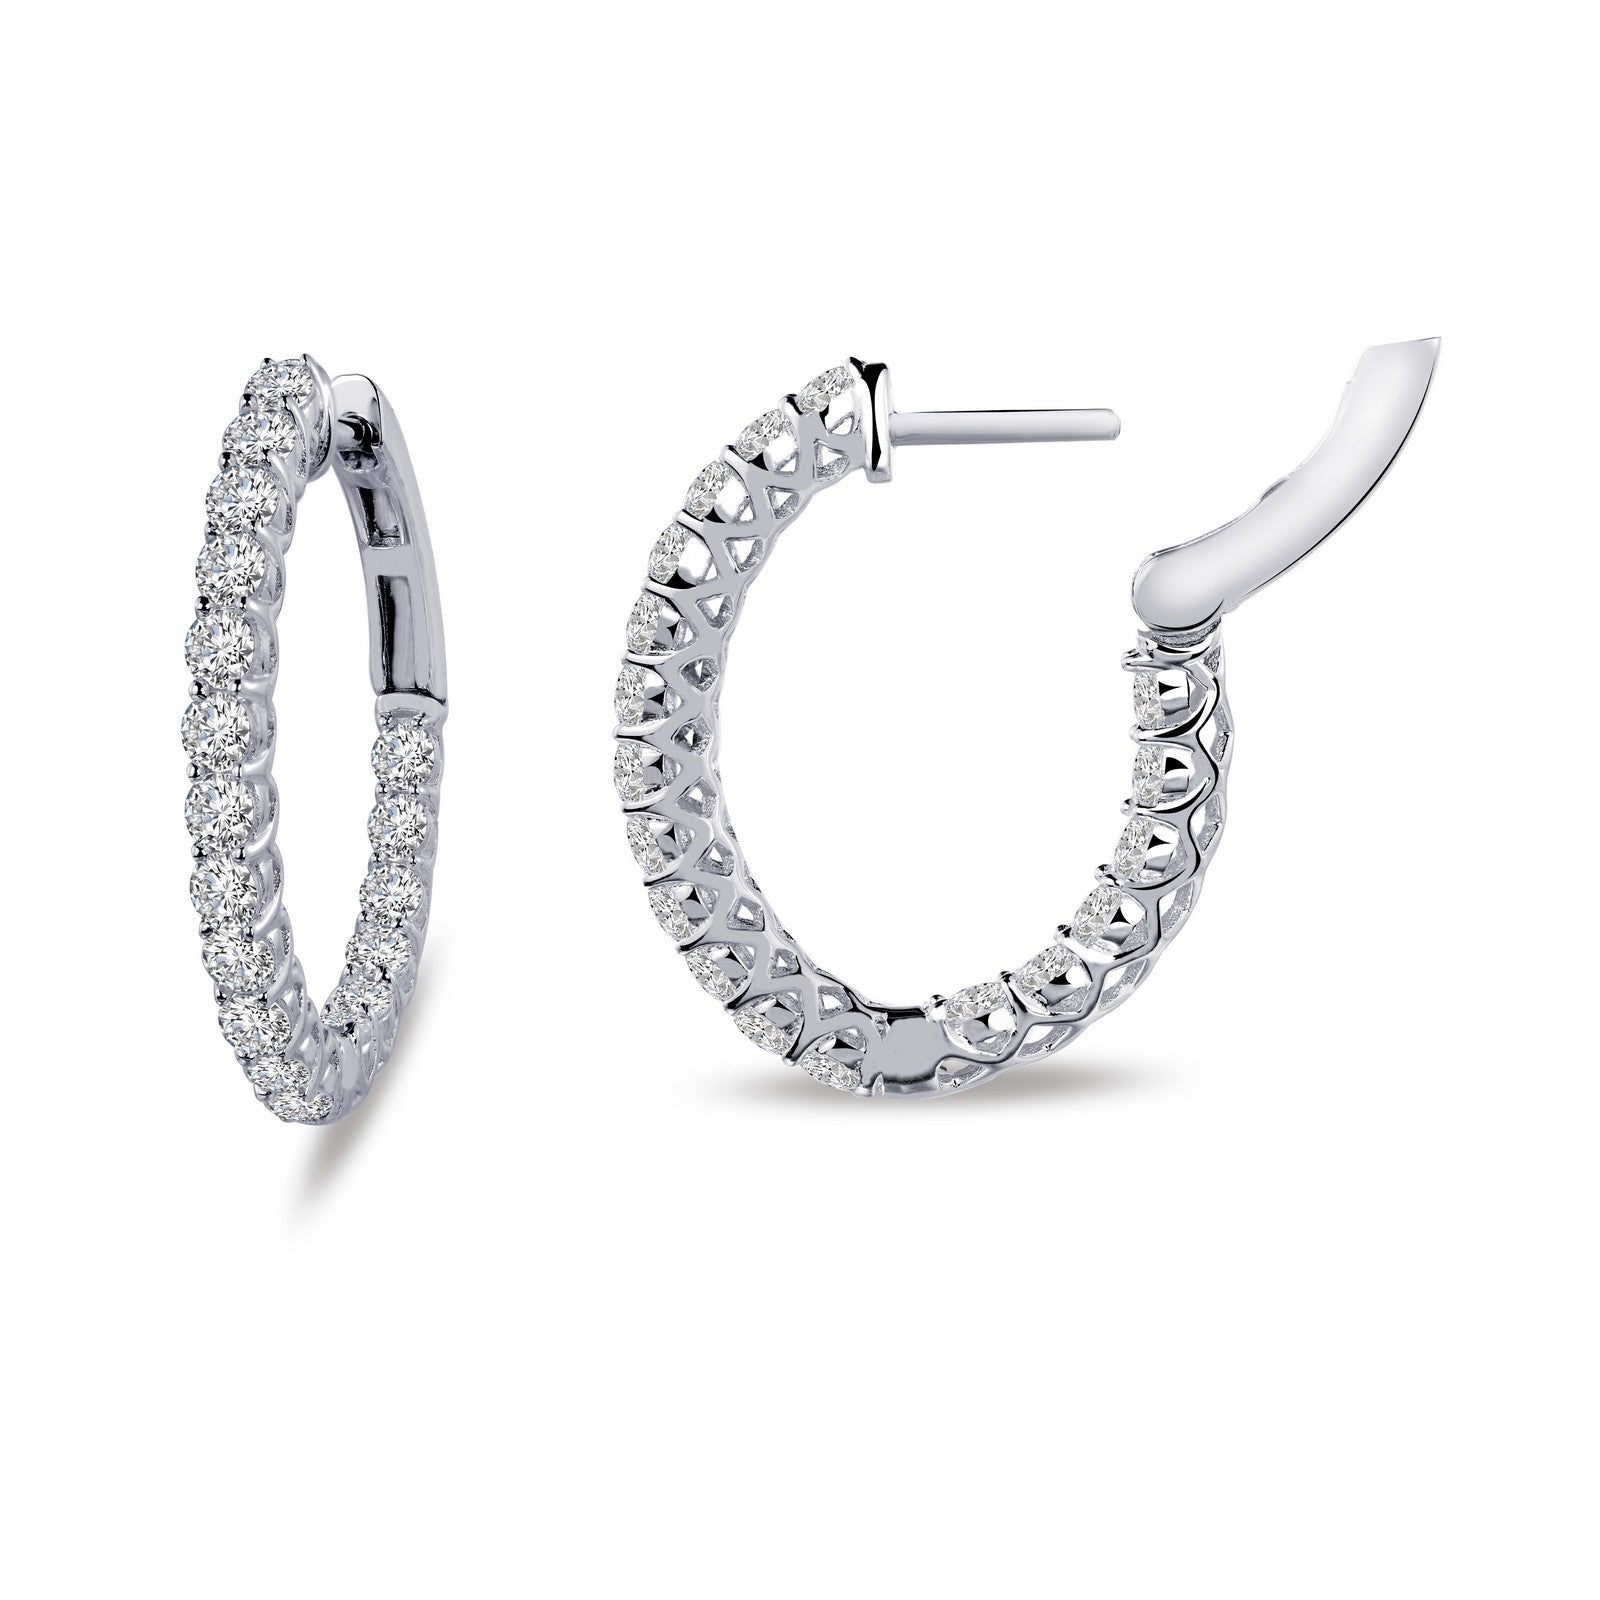 16 mm x 20 mm Oval Hoop Earrings – Lafonn